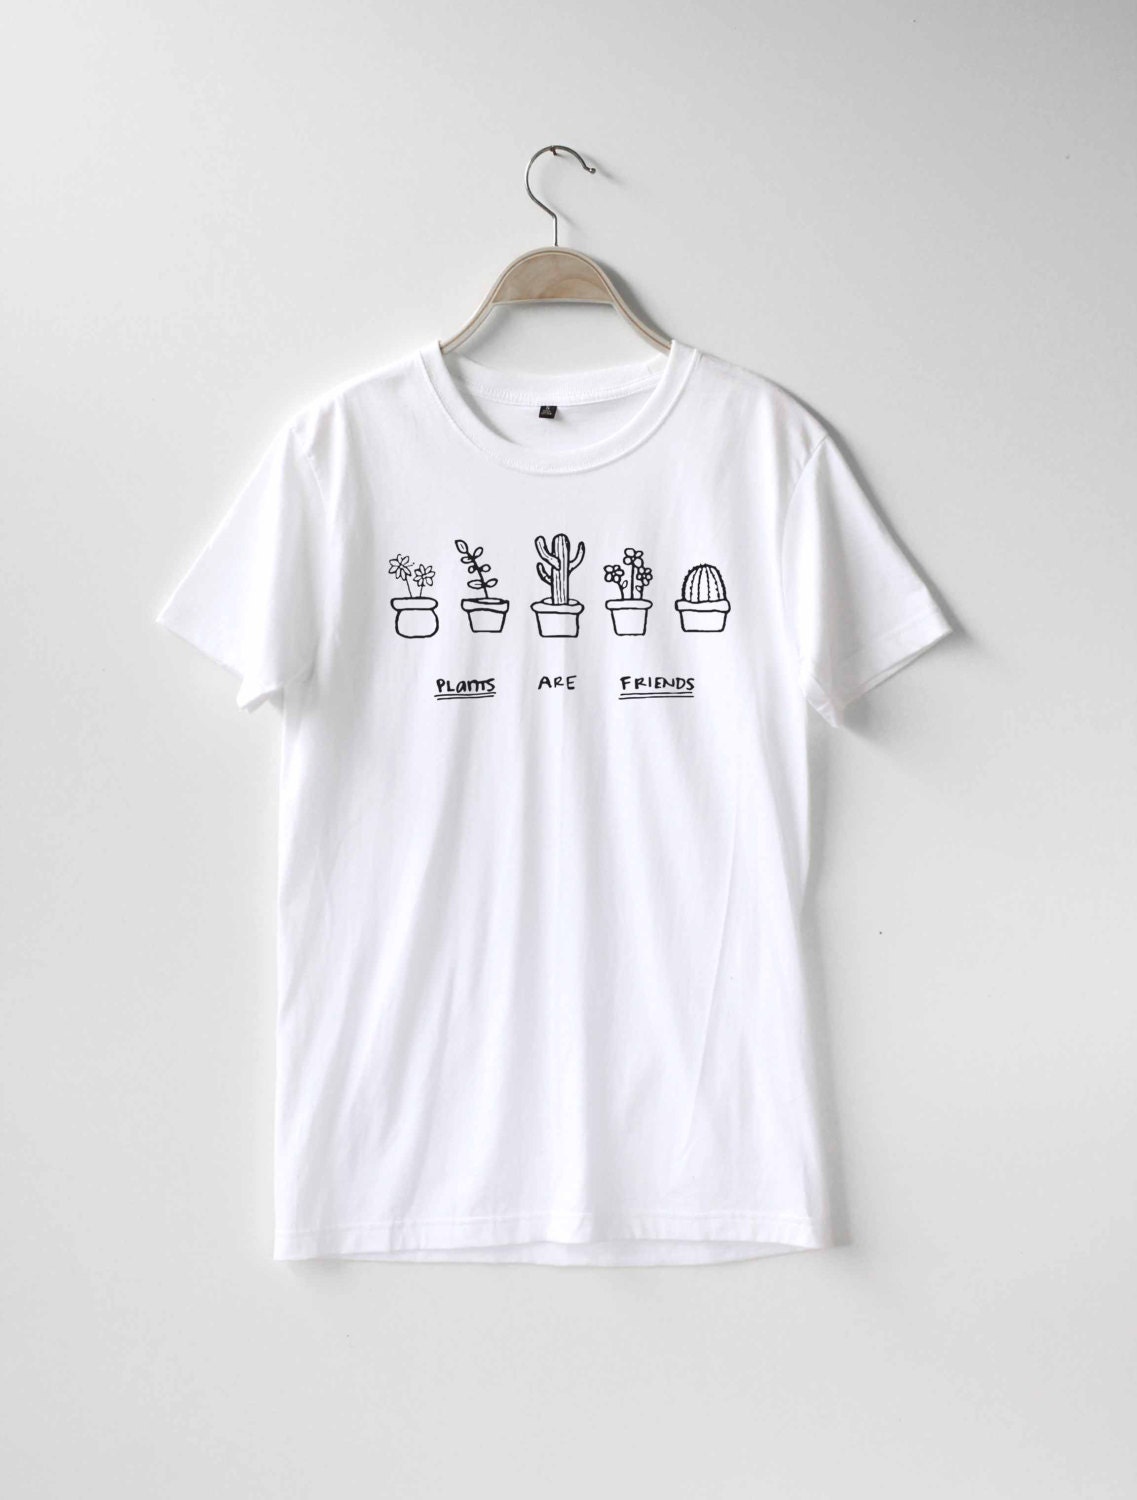 Plants are Friends Shirt TShirt T-Shirt T Shirt Tee | Etsy